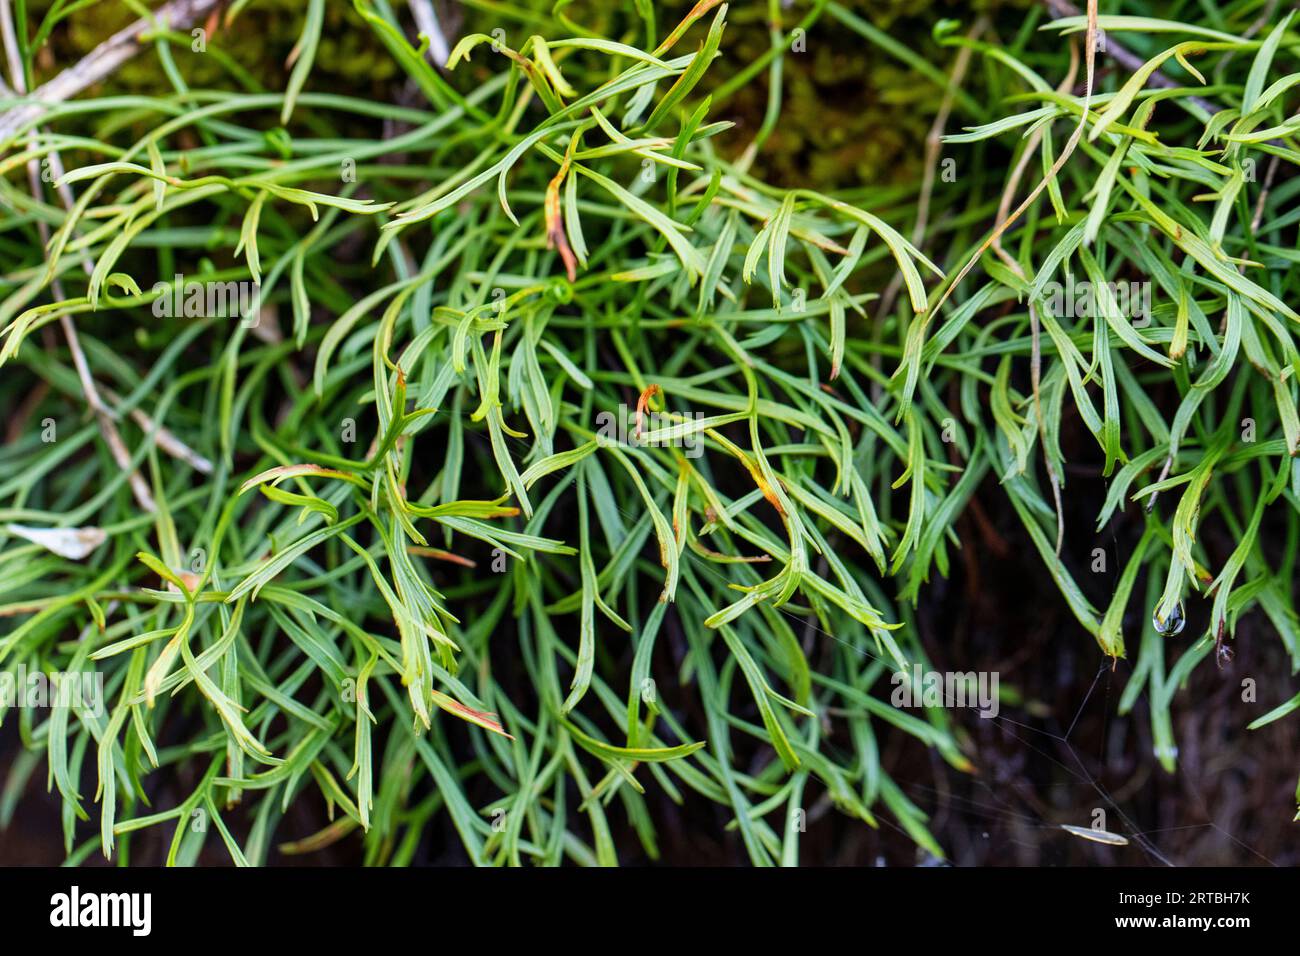 Northern spleenwort, Forked spleenwort (Asplenium septentrionale), leaves, Germany Stock Photo